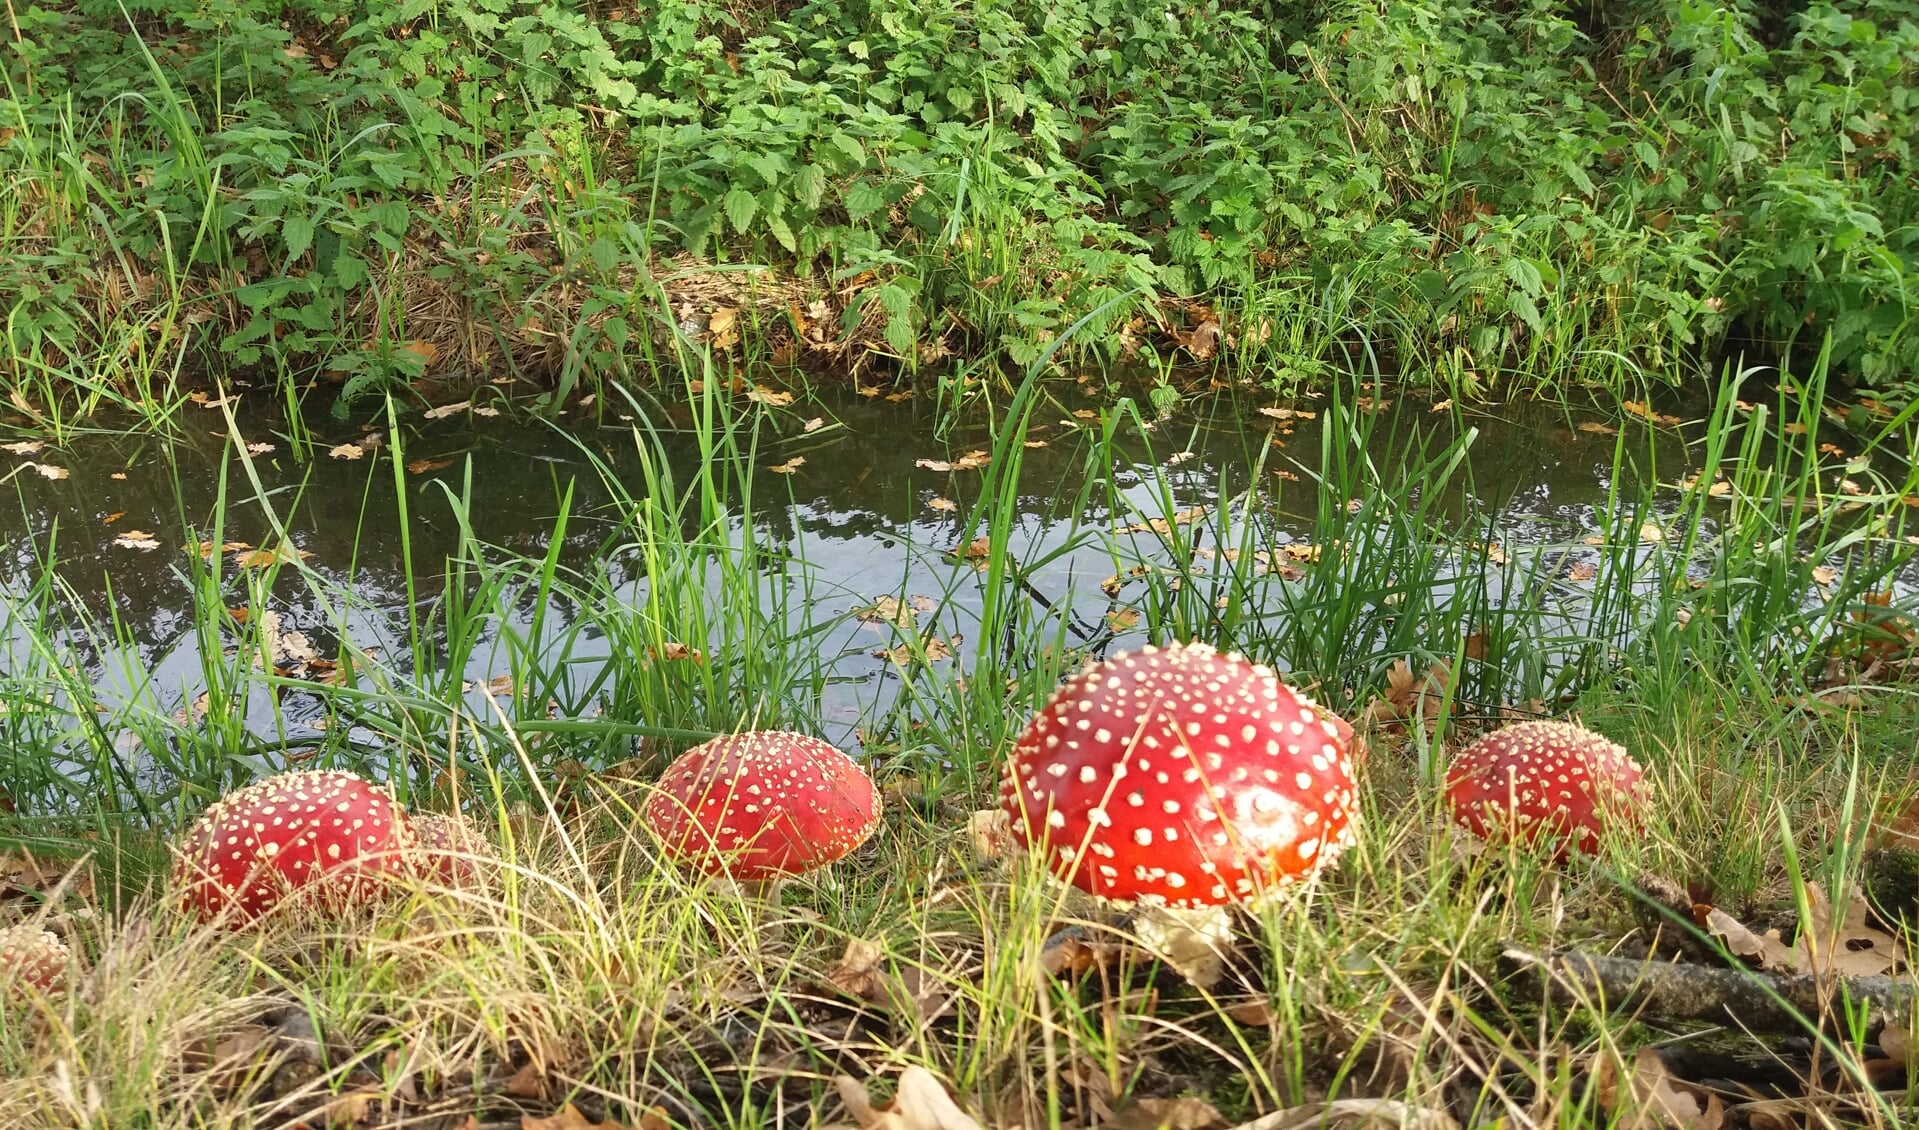 Tijdens een fietstocht langs het Maximakanaal genietend van de mooie natuur zag ik deze paddenstoelen.